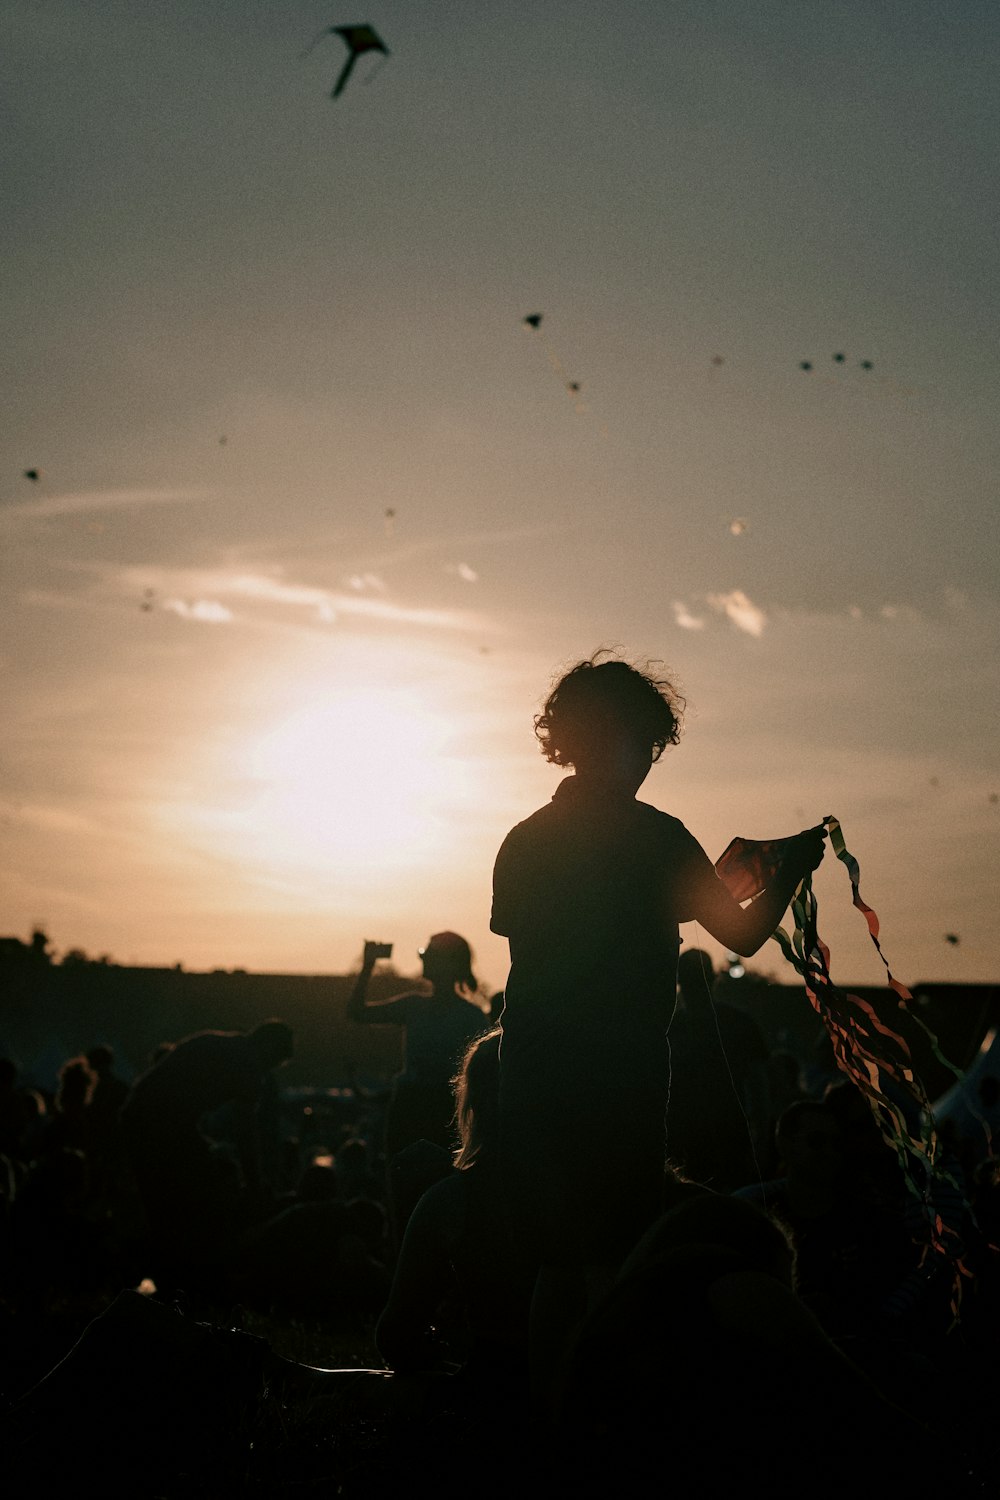 Una persona sosteniendo una cometa frente a una puesta de sol